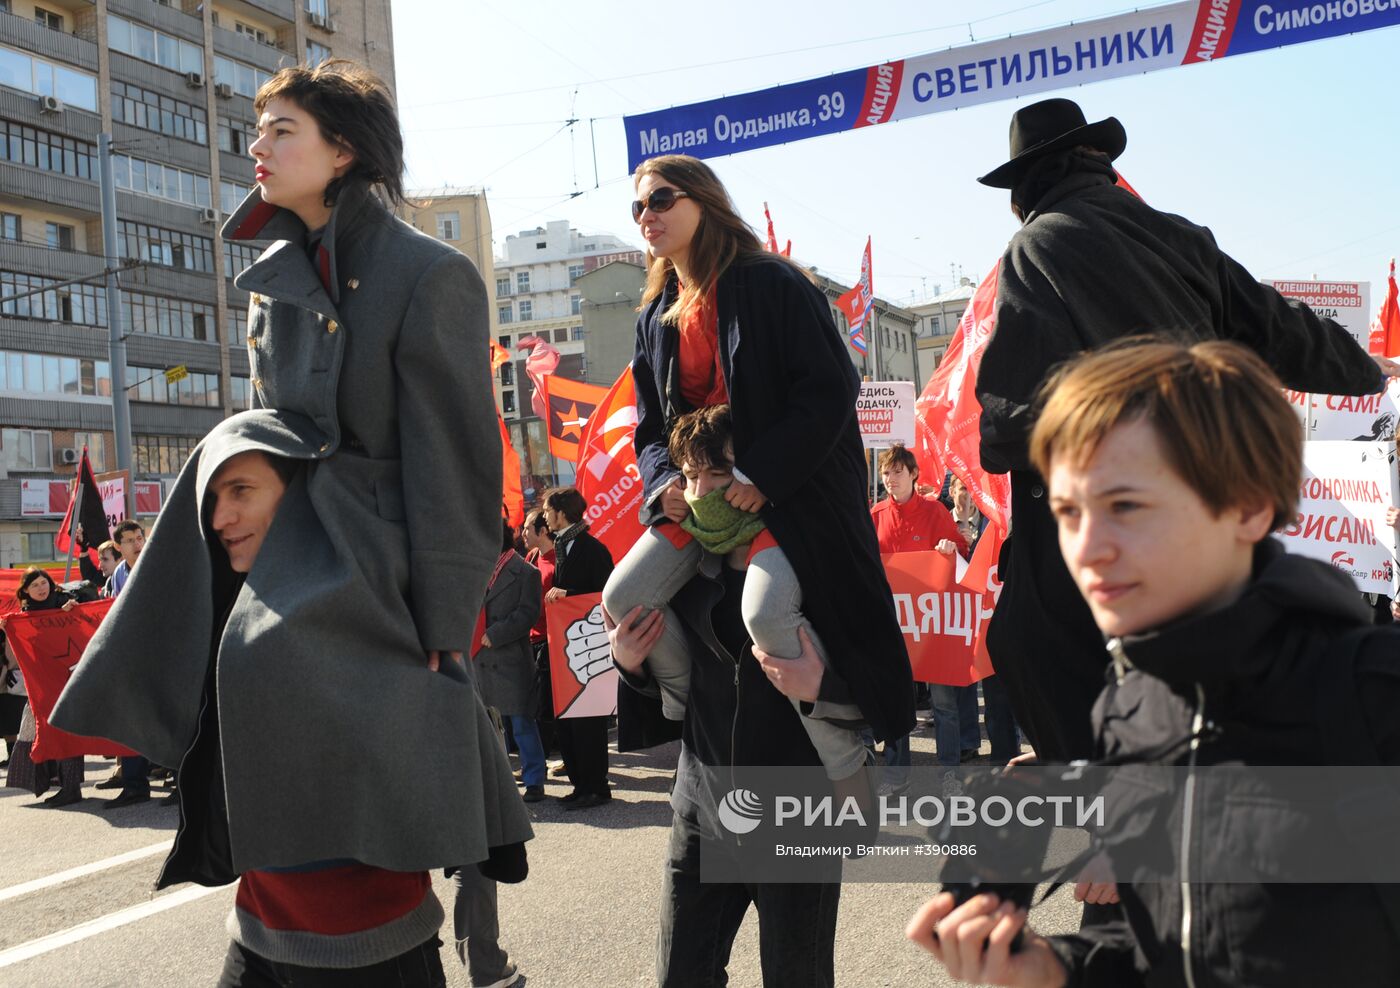 Первомайское шествие представителей левой оппозиции